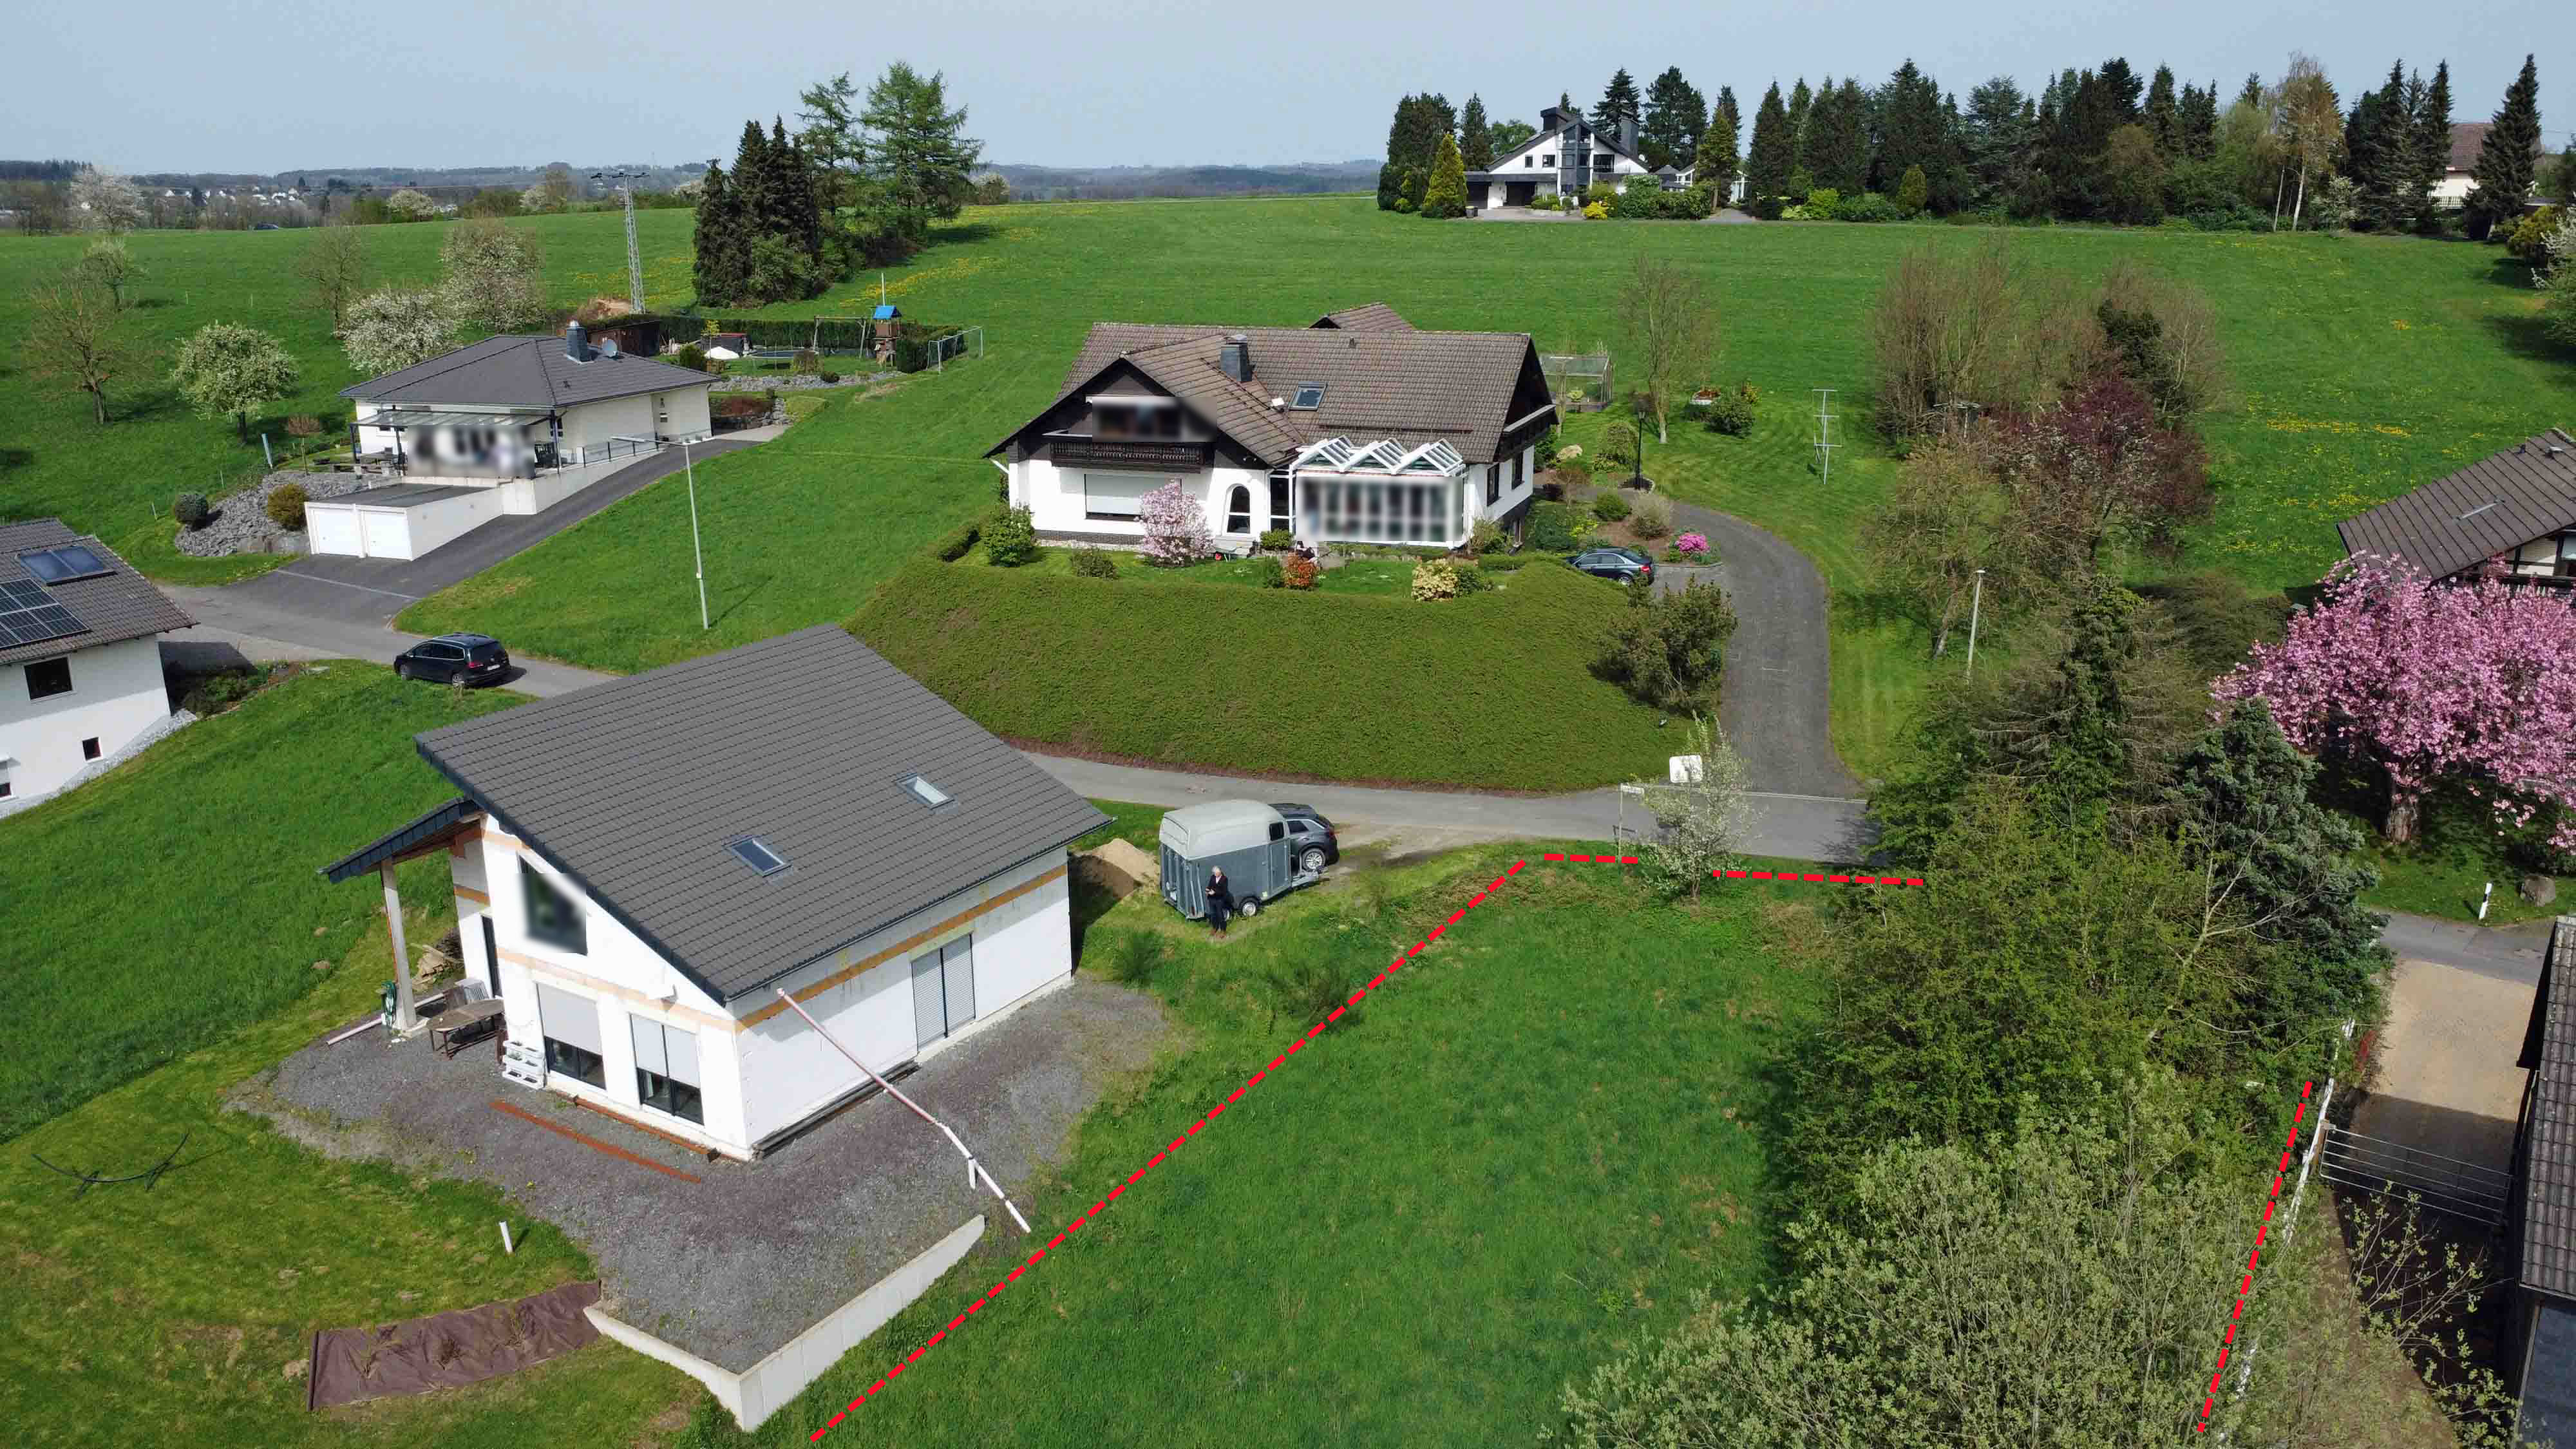 Windeck-Kohlberg: 936 m² Baugrundstück in ruhiger Ortsrandlage, mögliche Bebauung: - siehe Nachbarhäuser !